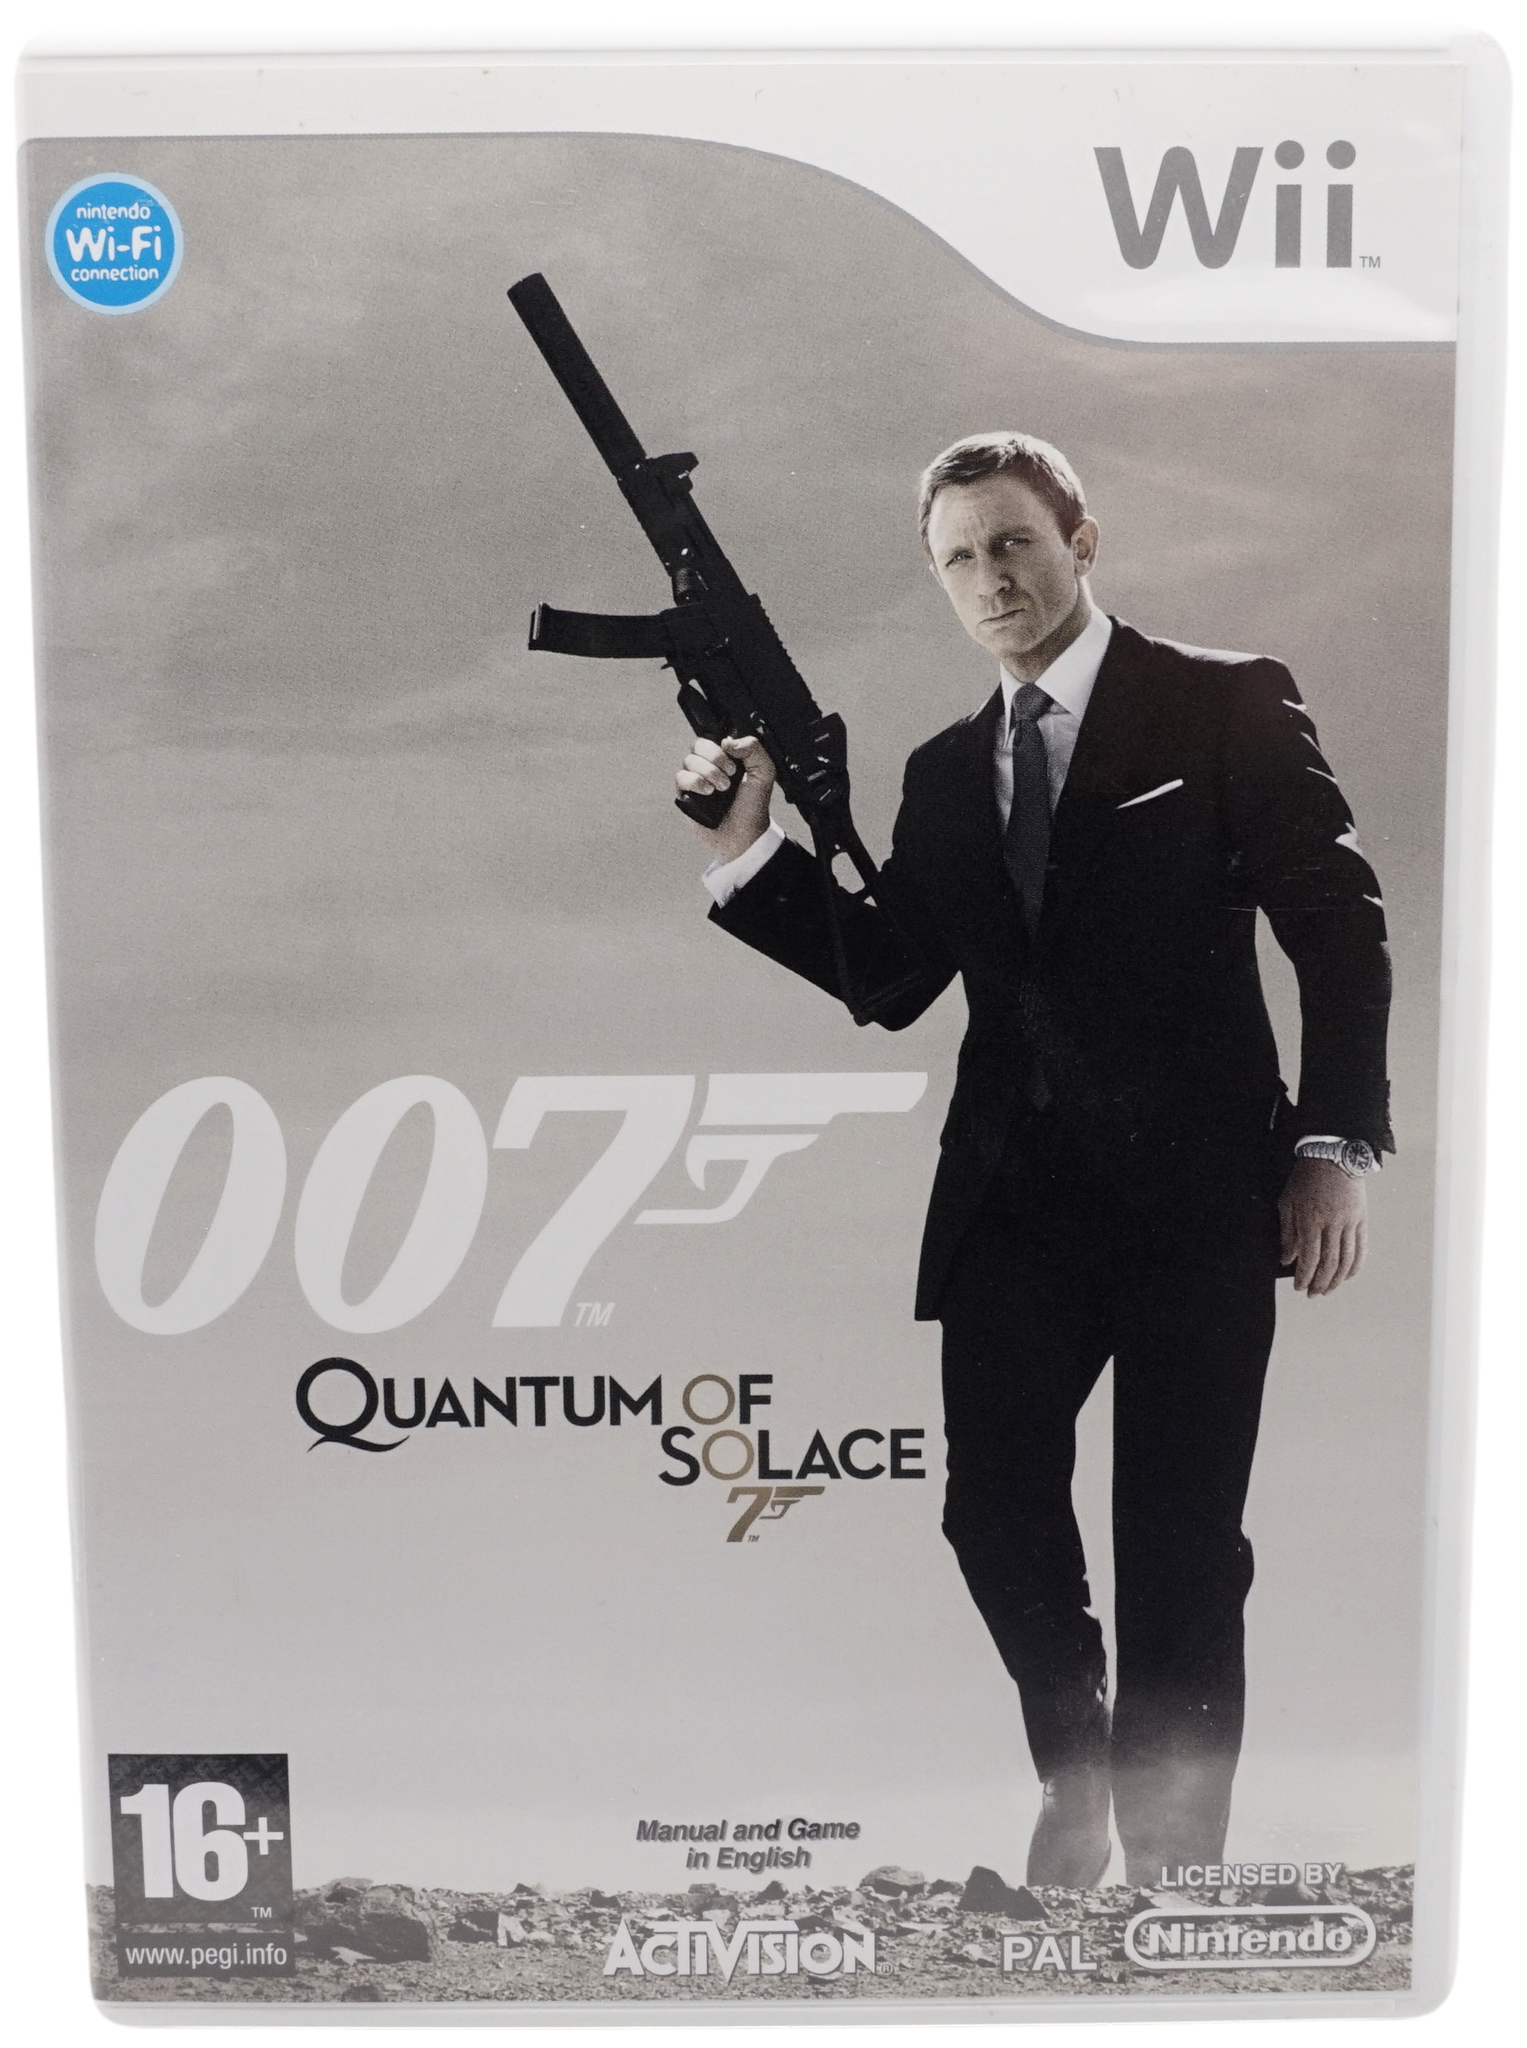 007 : Quantum of Solace (Wii)